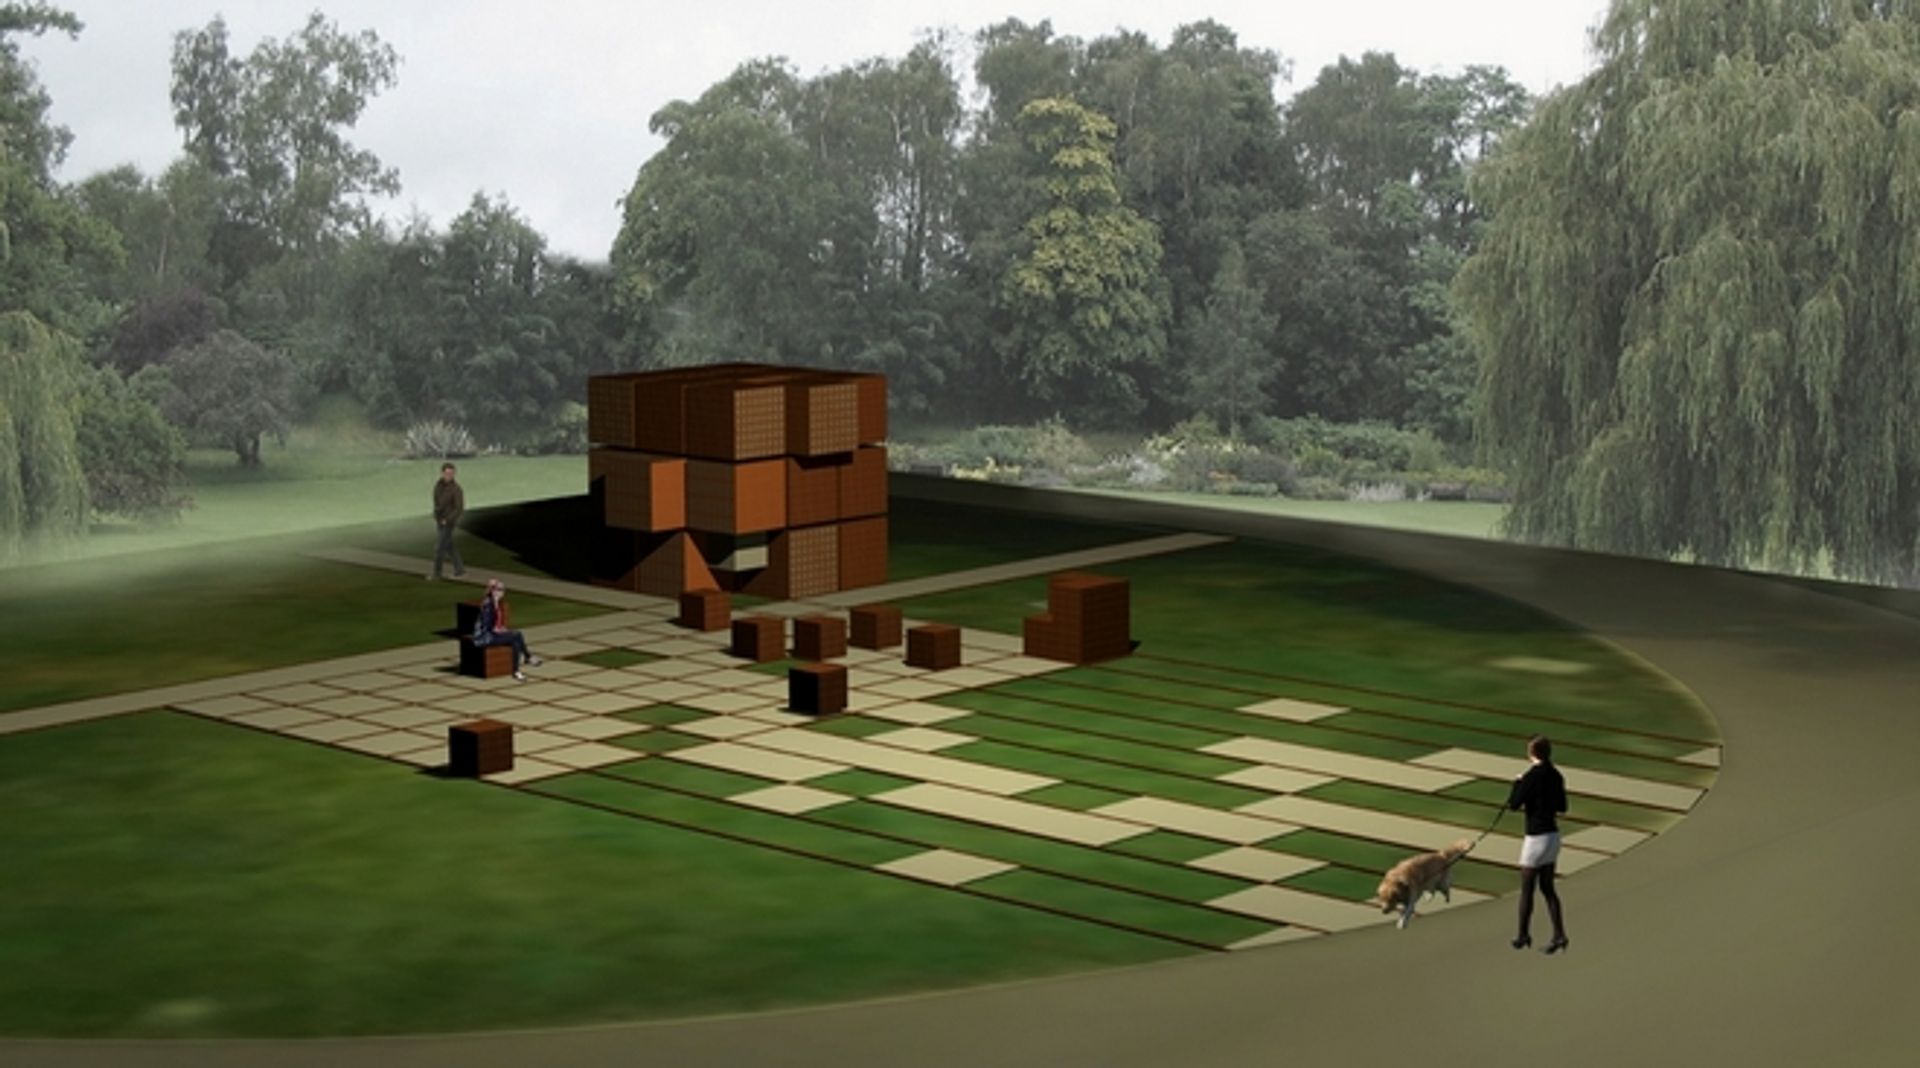  Wrocławski park w centrum miasta będzie miał nową rzeźbę z klinkieru